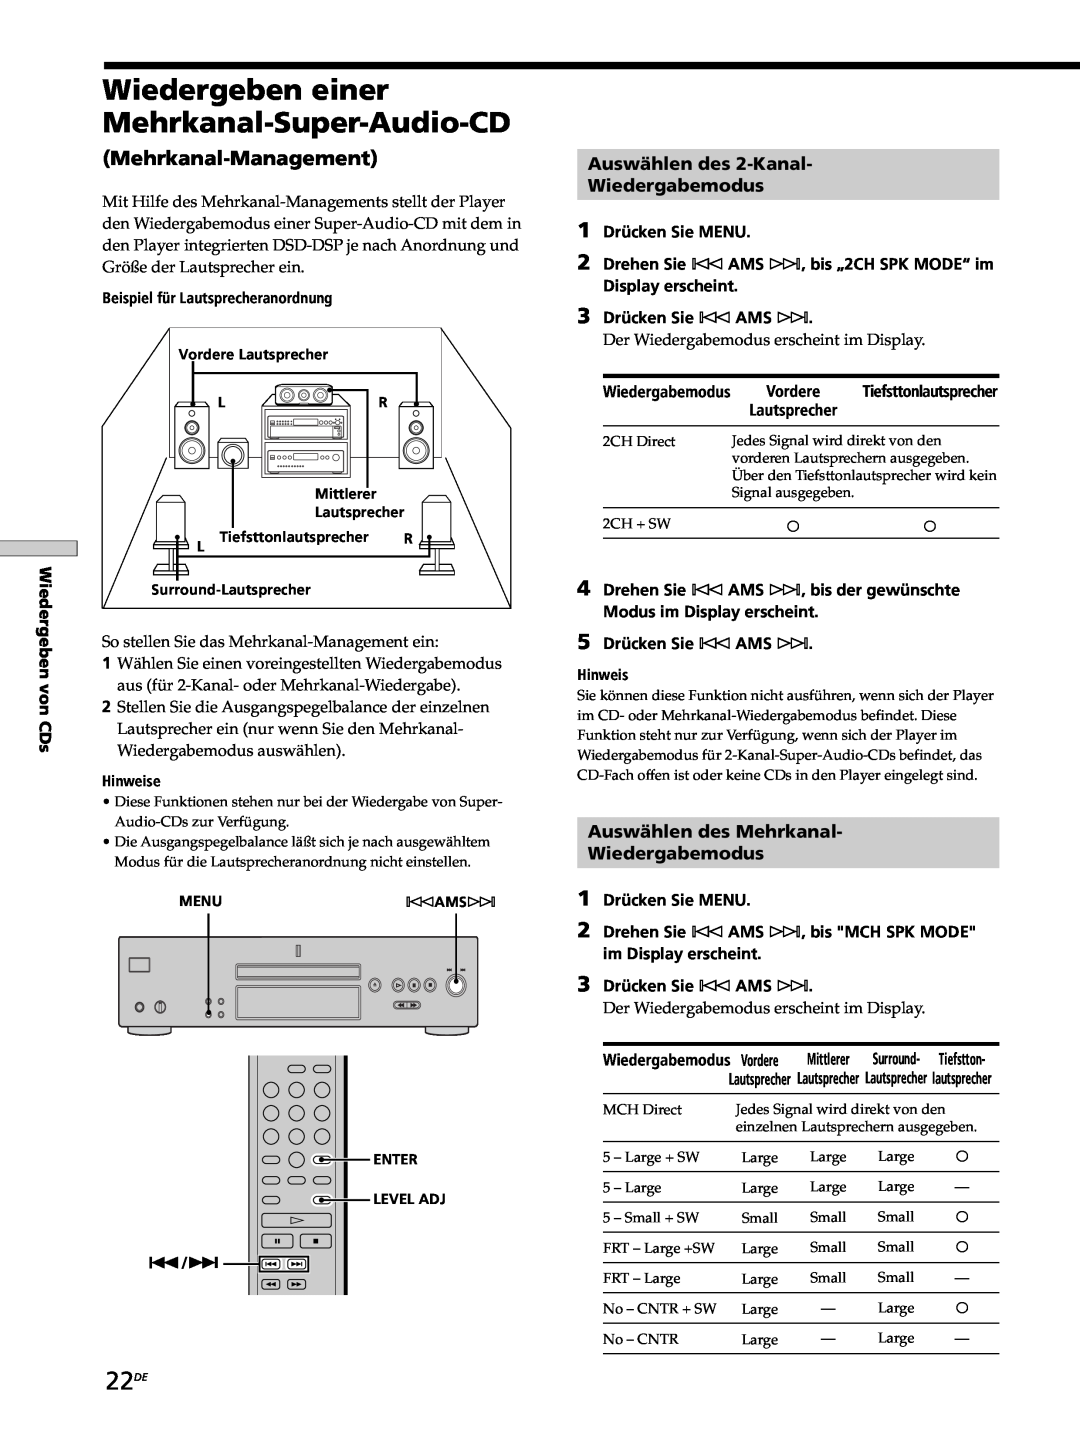 Sony SCD-XB770 operating instructions Wiedergeben einer Mehrkanal-Super-Audio-CD, 22DE, Mehrkanal-Management 